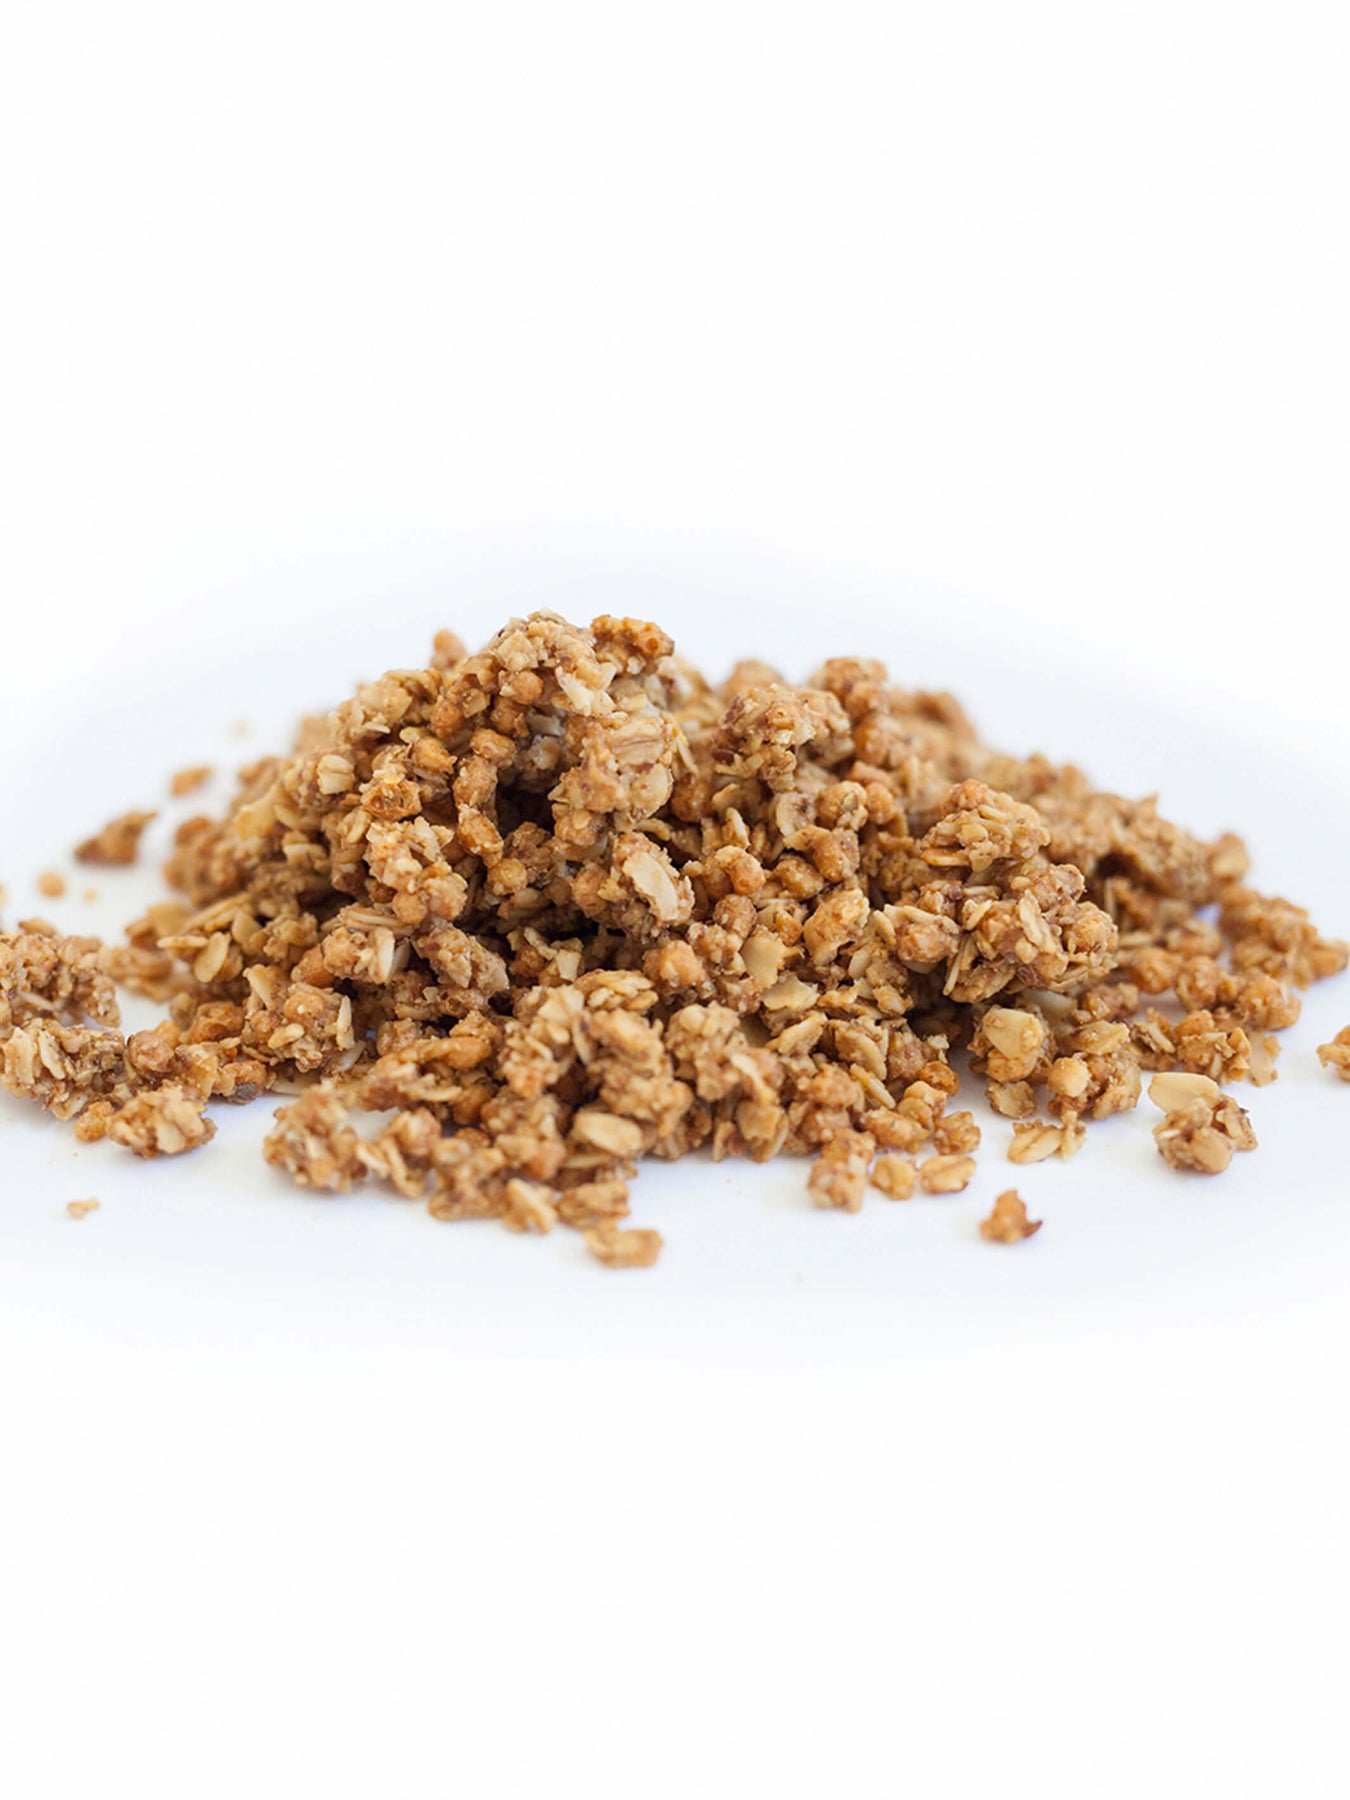 Granola  Bulk Coconut Chia - $5.99 per lbs – Erin Baker's®